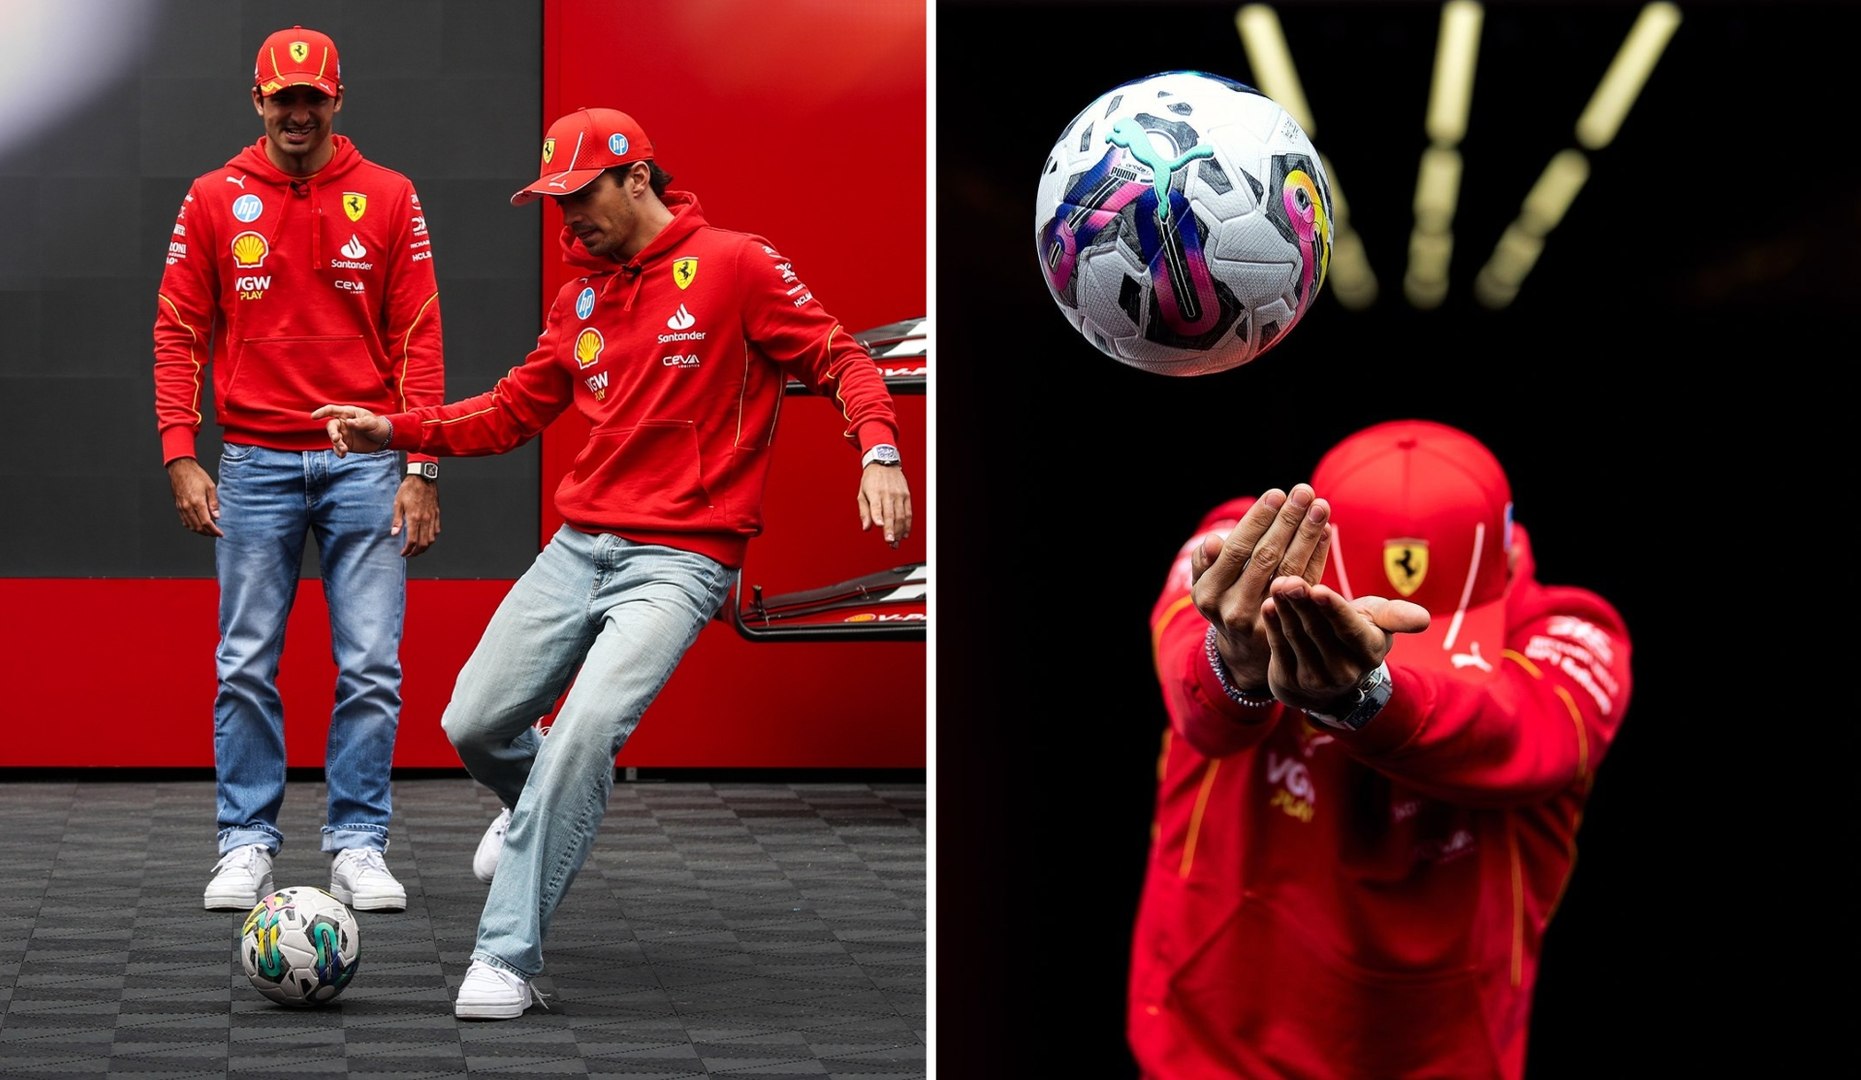 Pilotos de Ferrari demuestran sus habilidades en tanda de penales; Espaa vs Francia? 